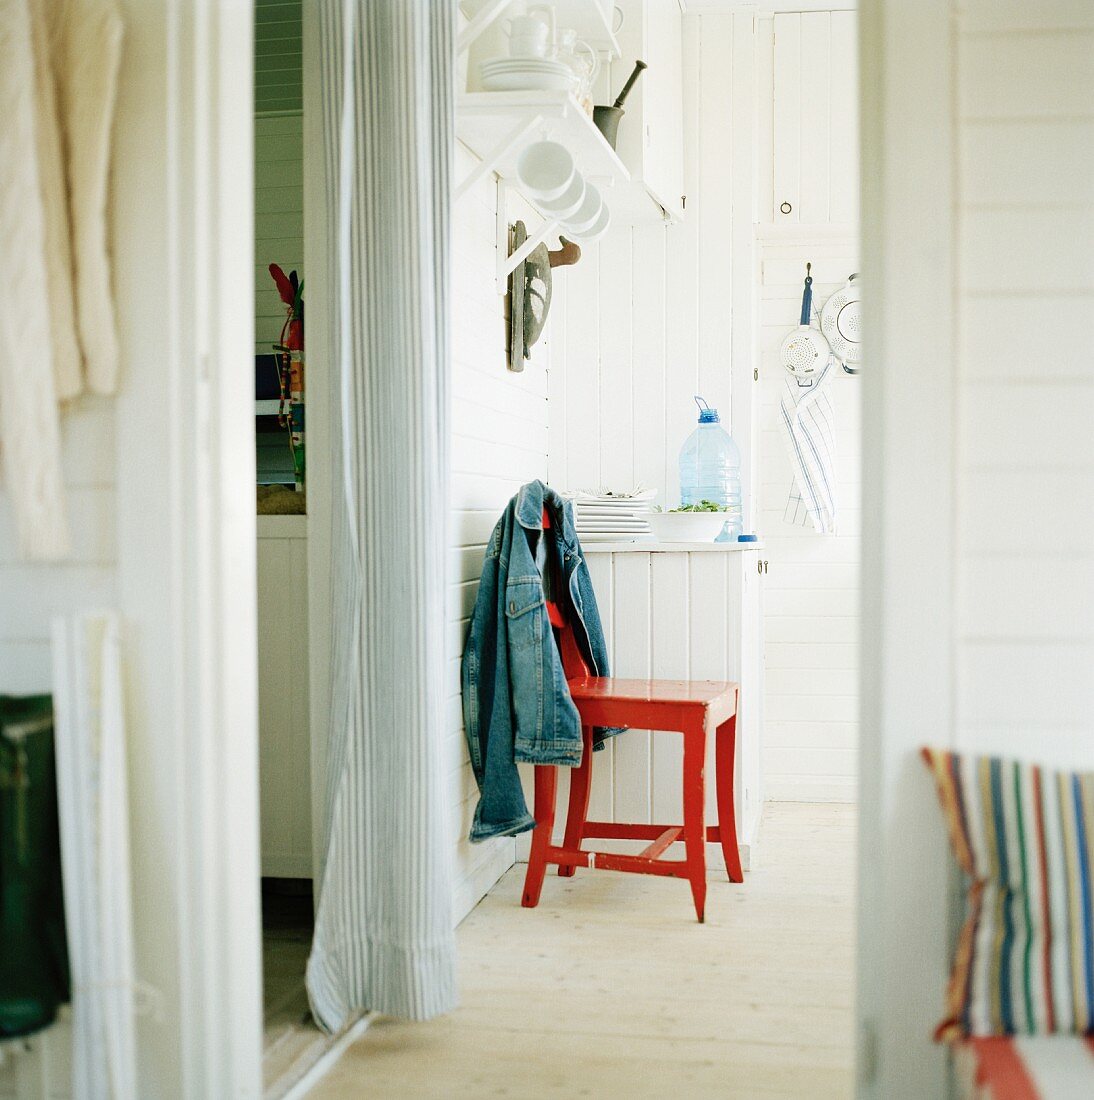 Neben Durchgang mit weißem Vorhang rot lackierter Küchenstuhl und umgehängte Jacke